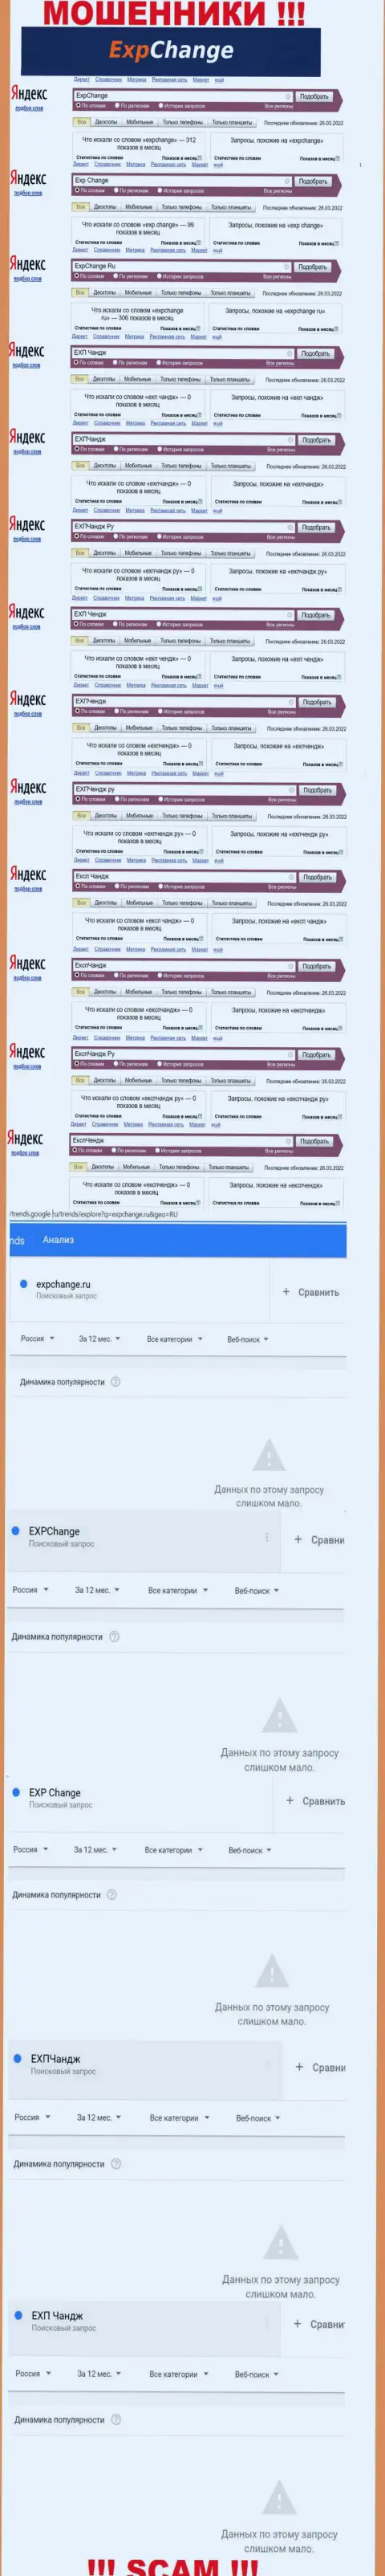 Количество поисковых запросов посетителями сети Интернет инфы о мошенниках ExpChange Ru